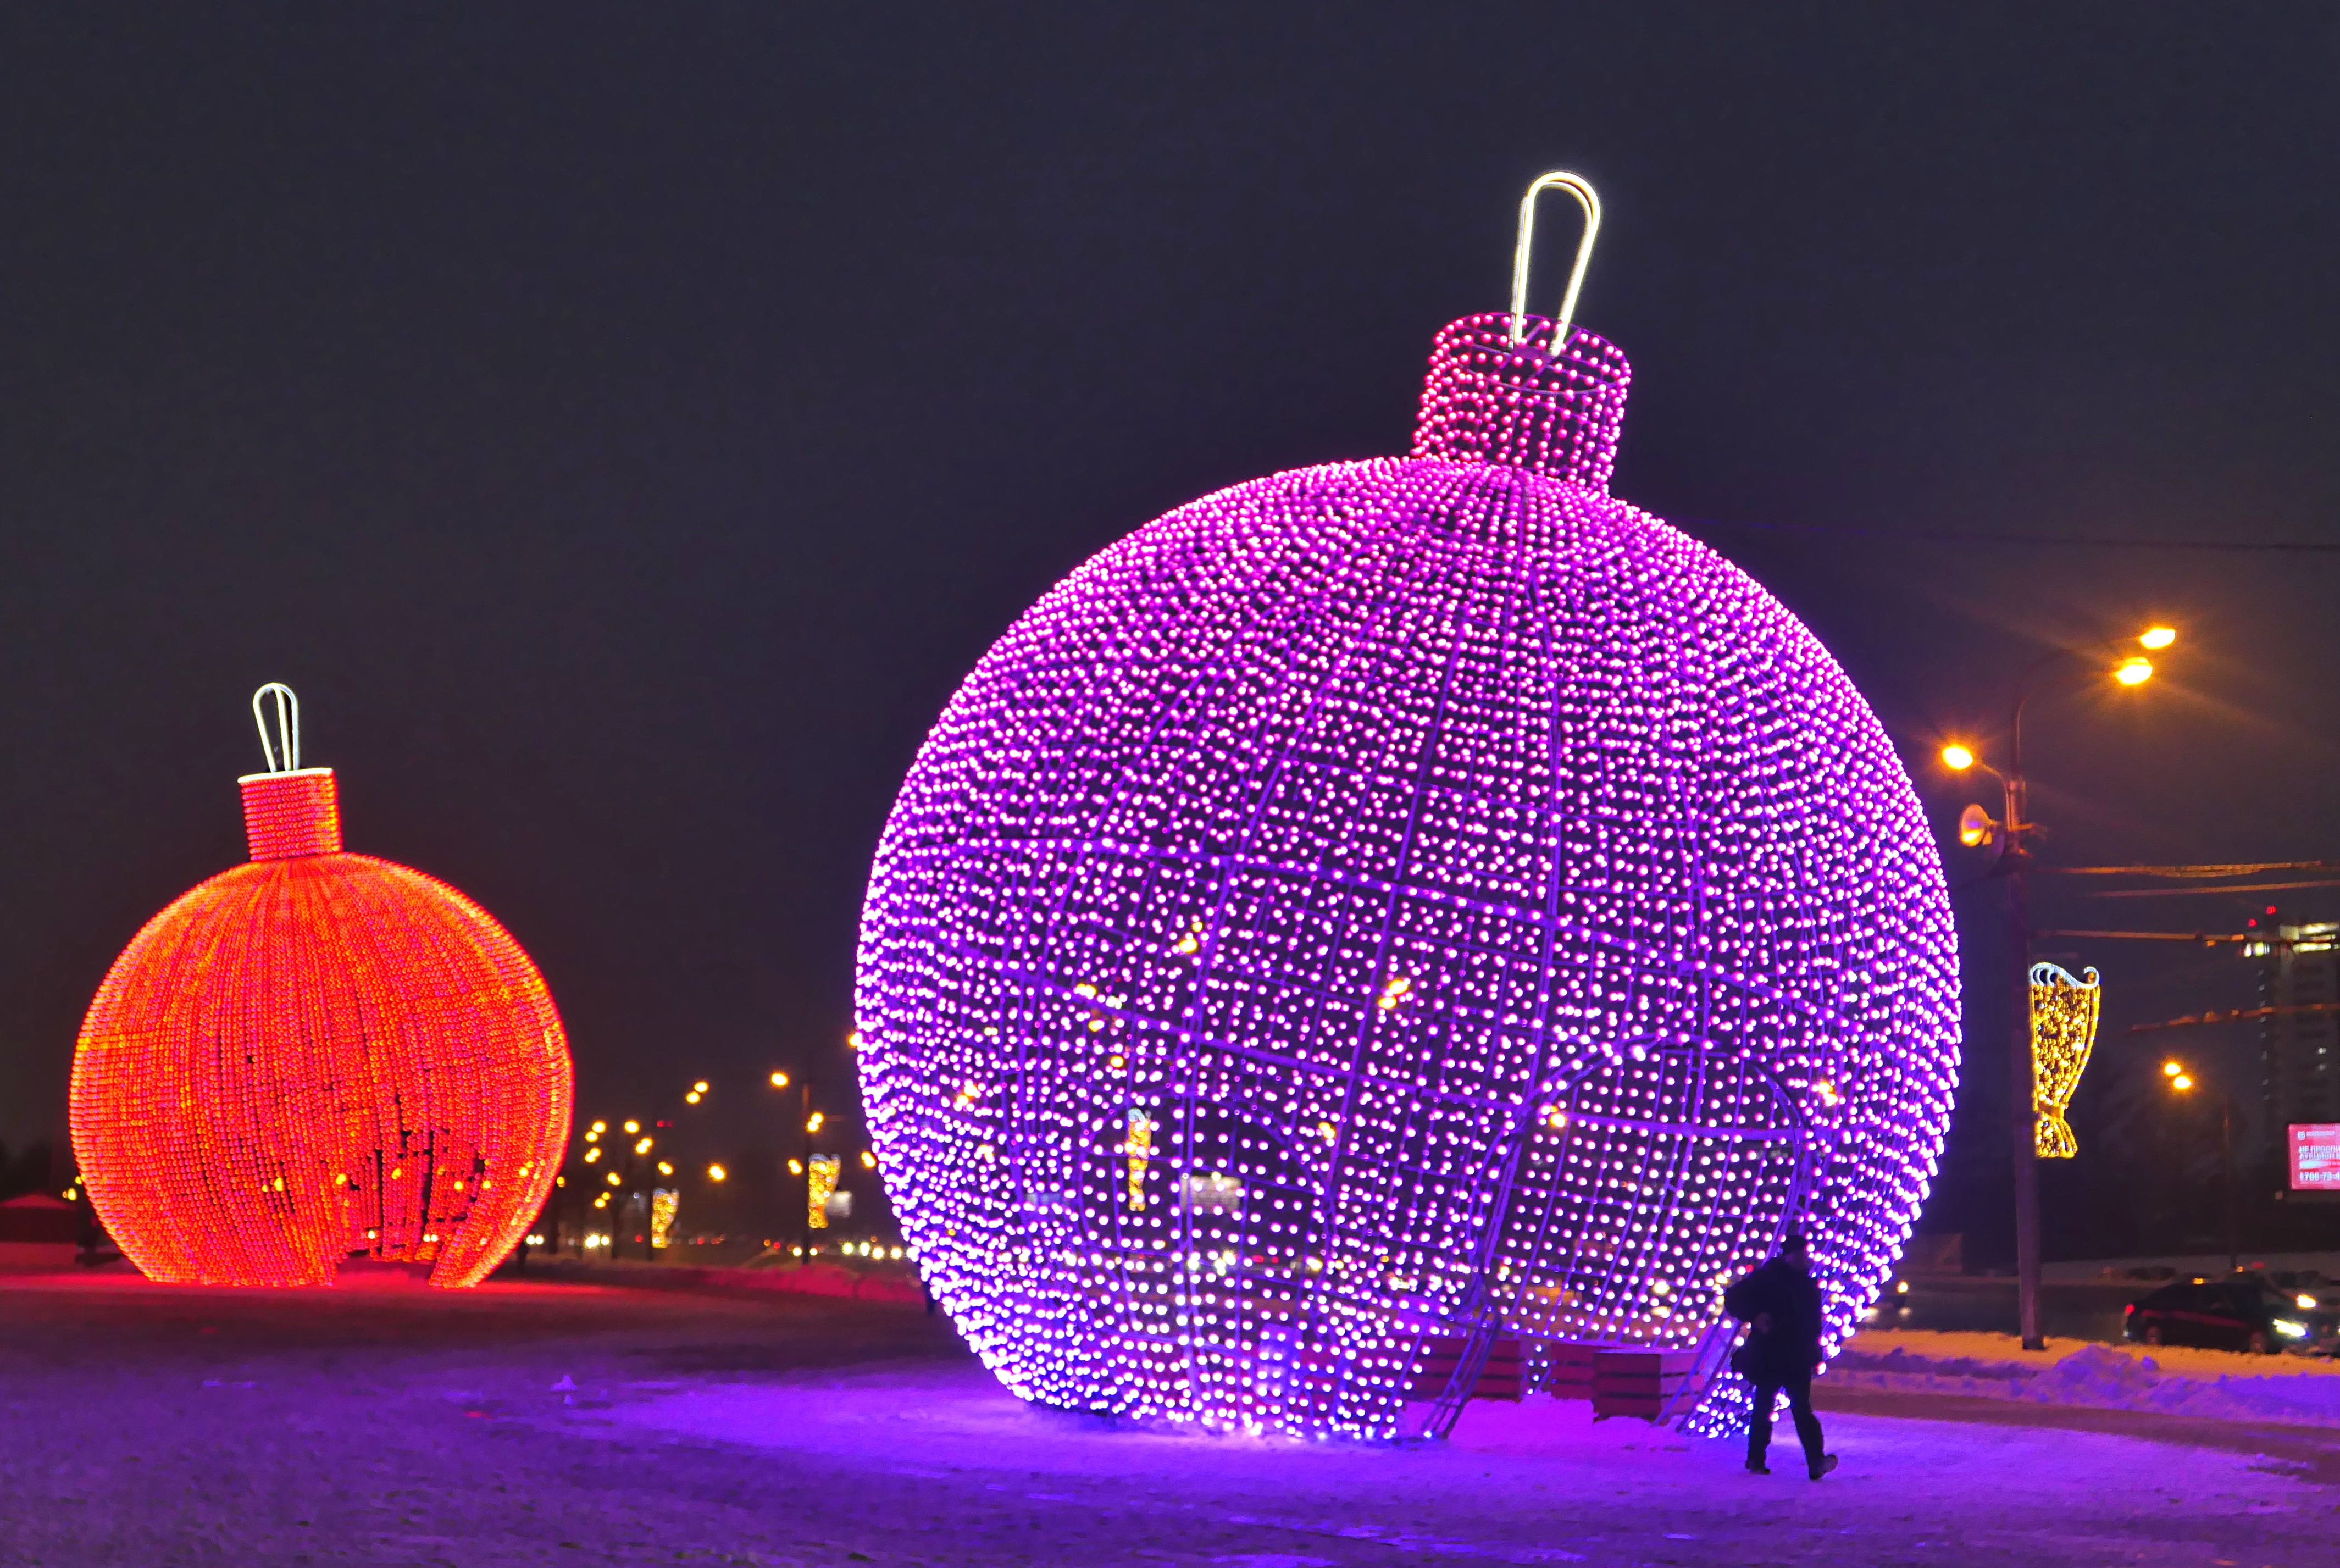 Парк светящихся фигур в Ростове-на-Дону предлагает уникальные возможности для проведения романтических свиданий и свадебных фотосессий.